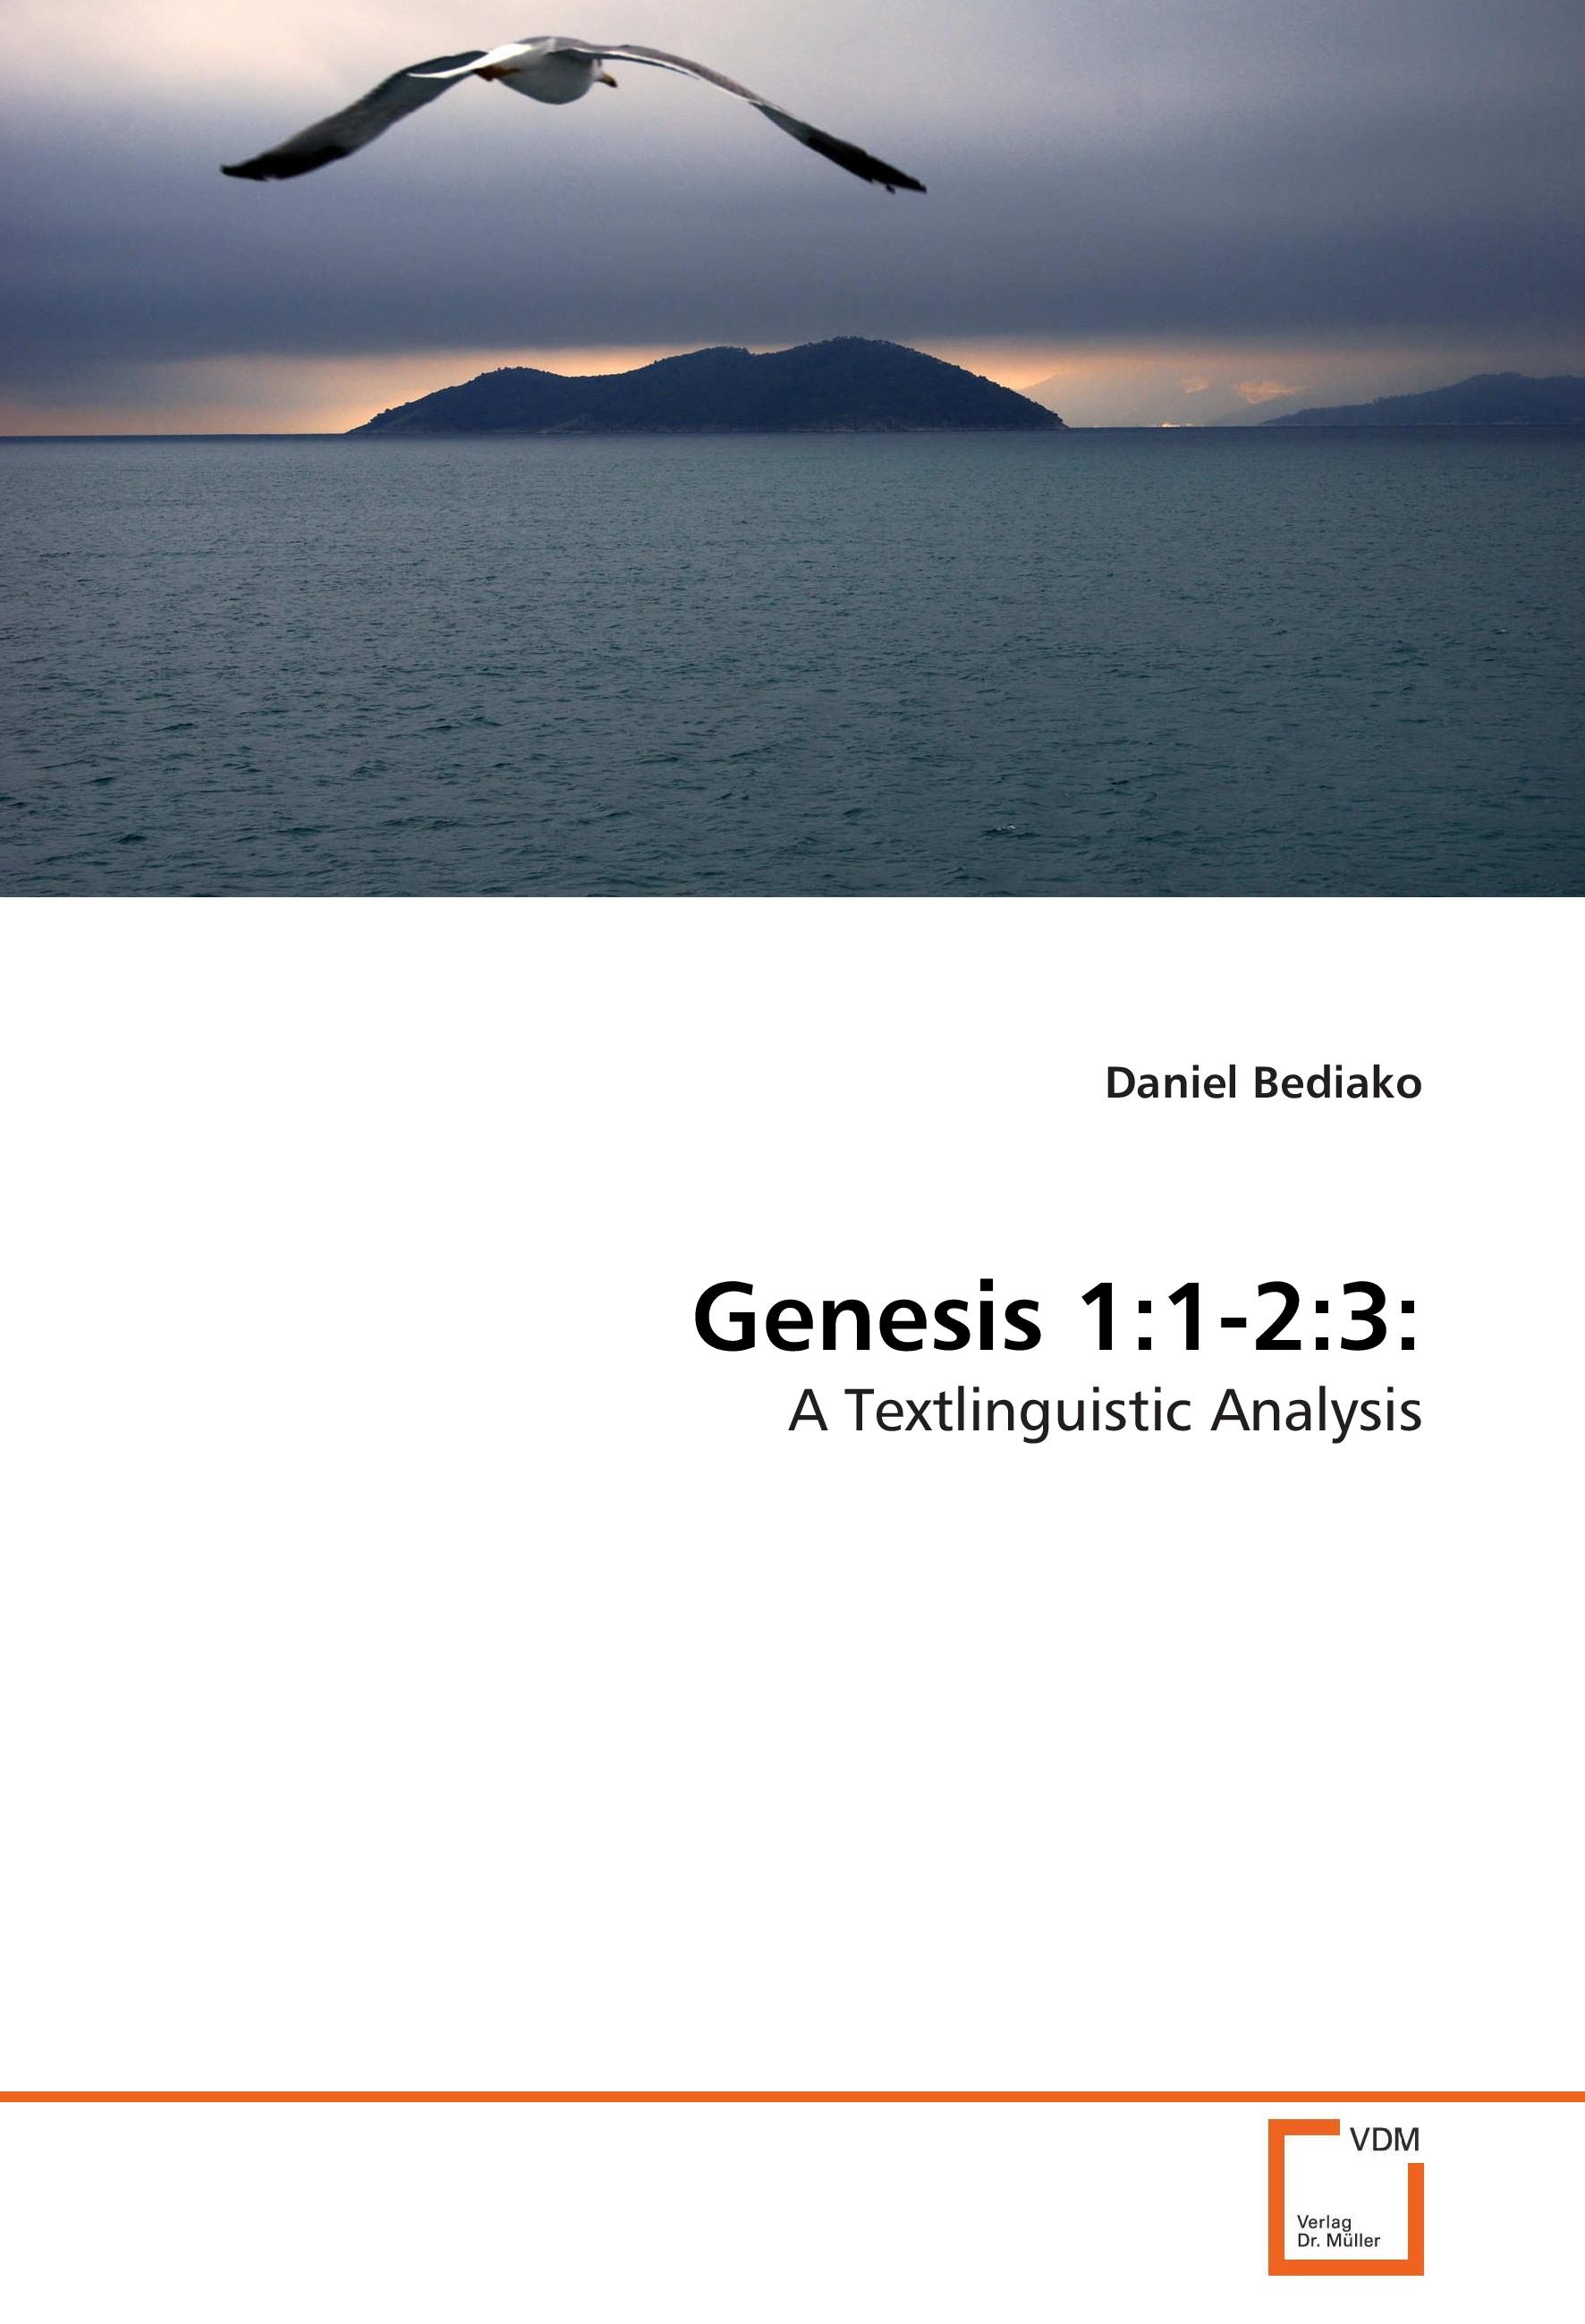 Genesis 1:1-2:3 - Daniel Bediako